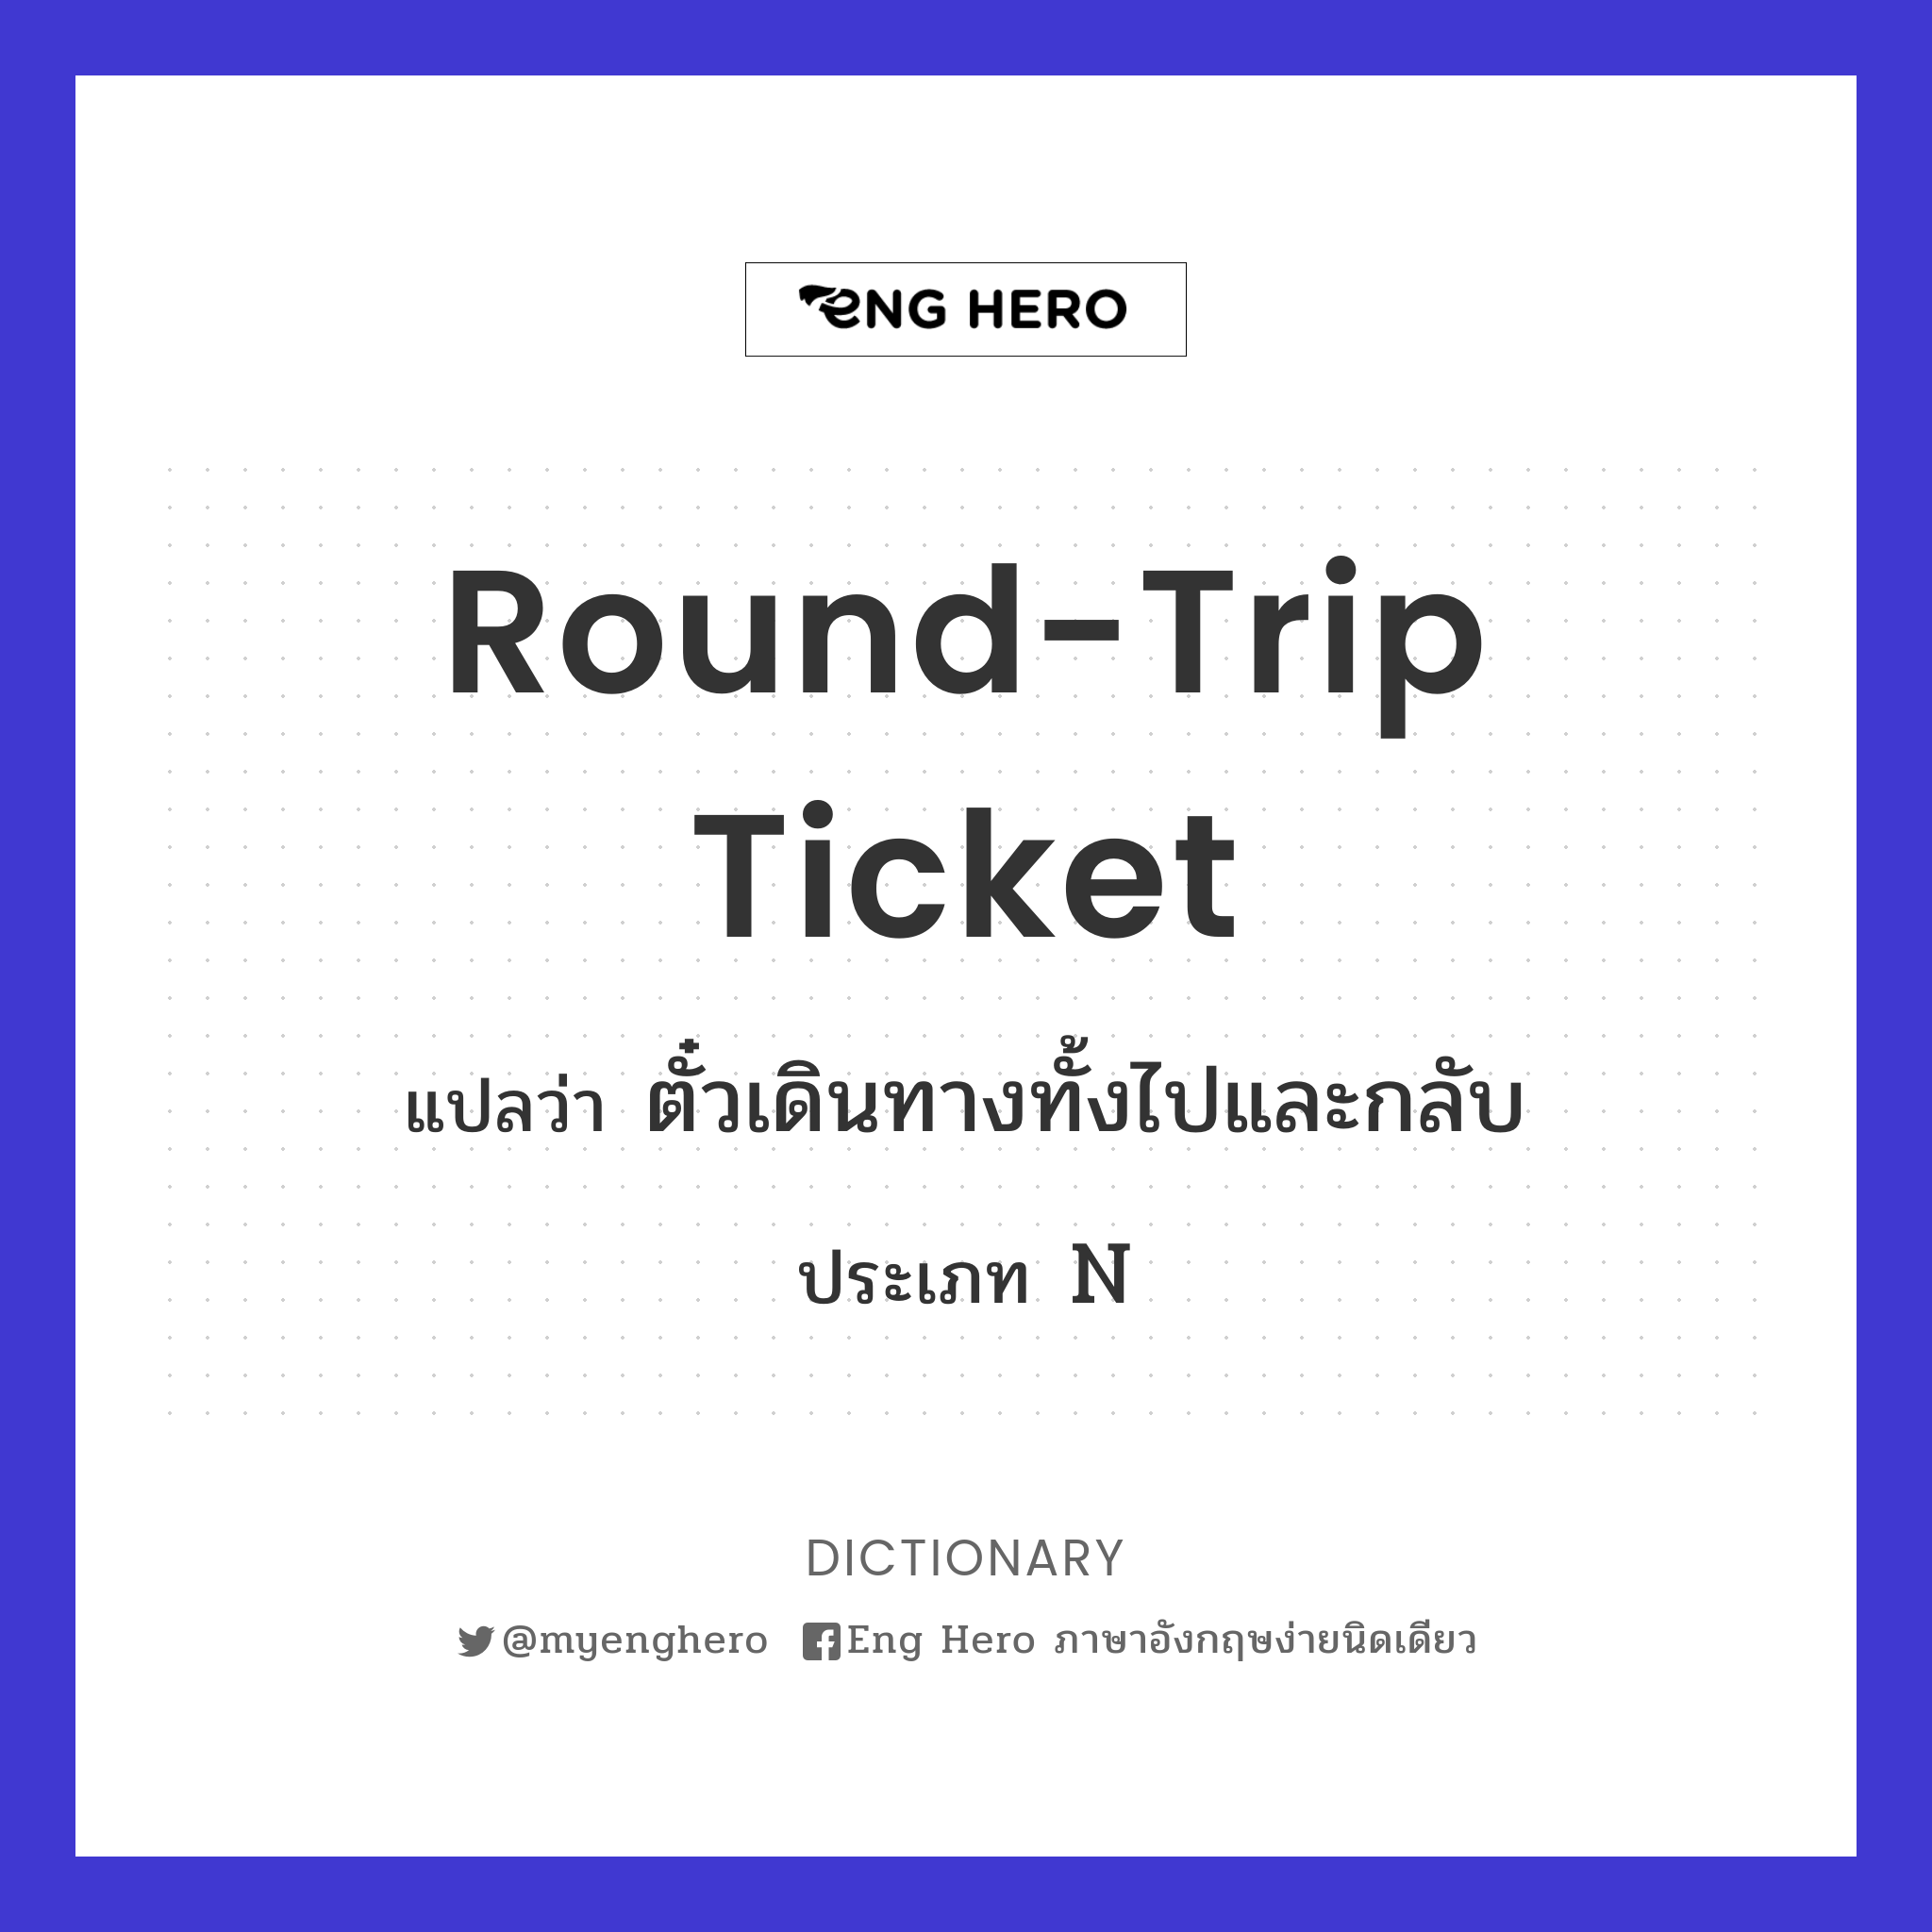 round-trip ticket